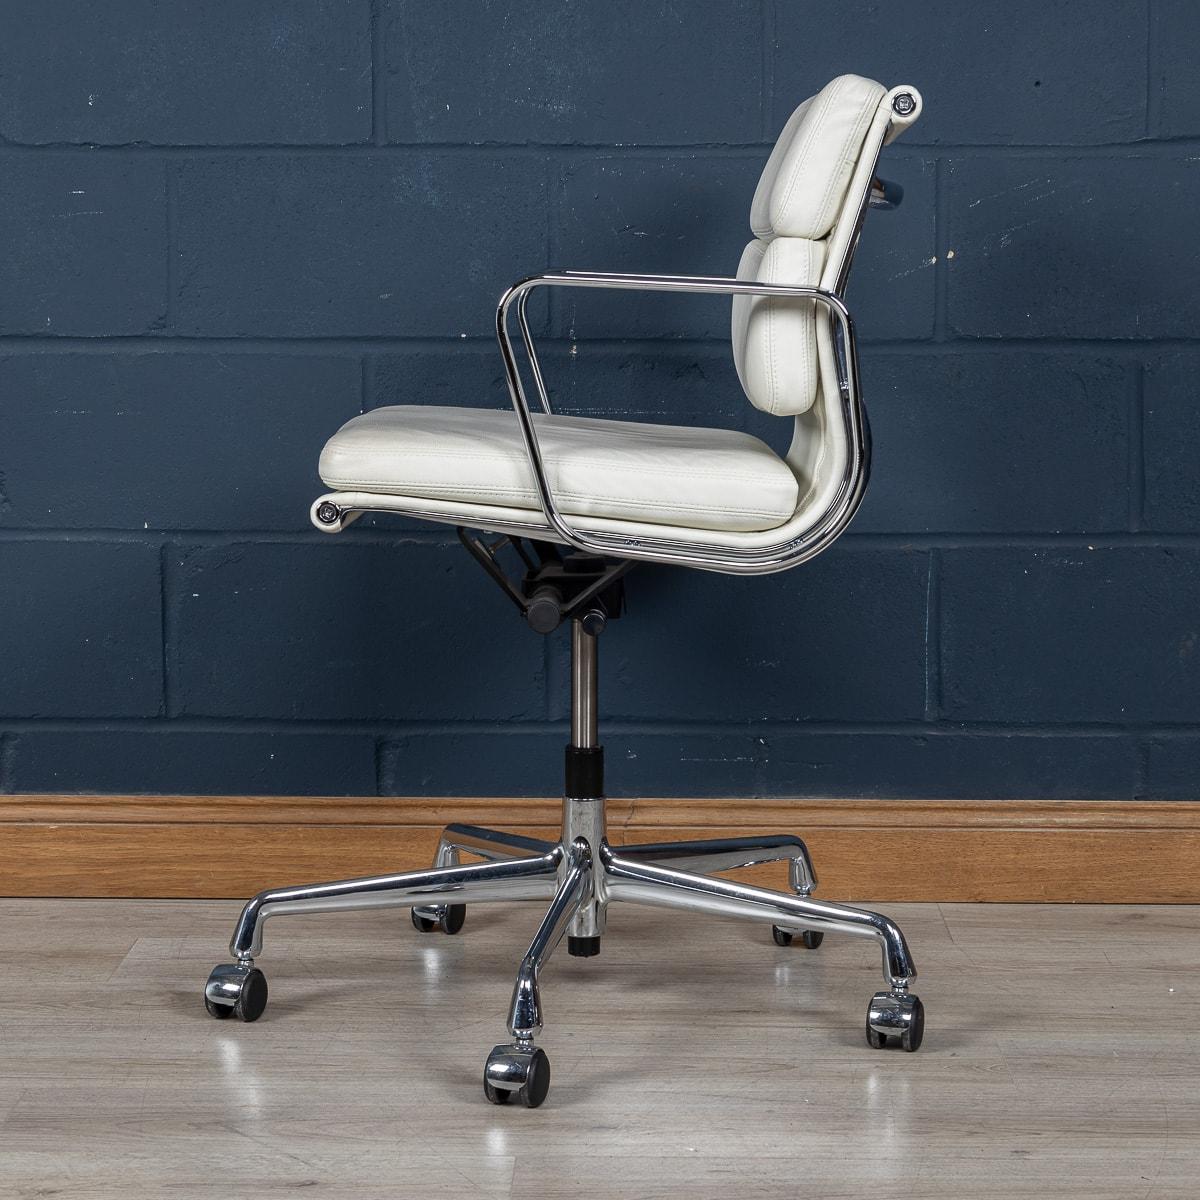 Ein atemberaubender Eames-Stuhl von Vitra, der erst vor kurzem hergestellt wurde, mit einem reizvollen weißen 